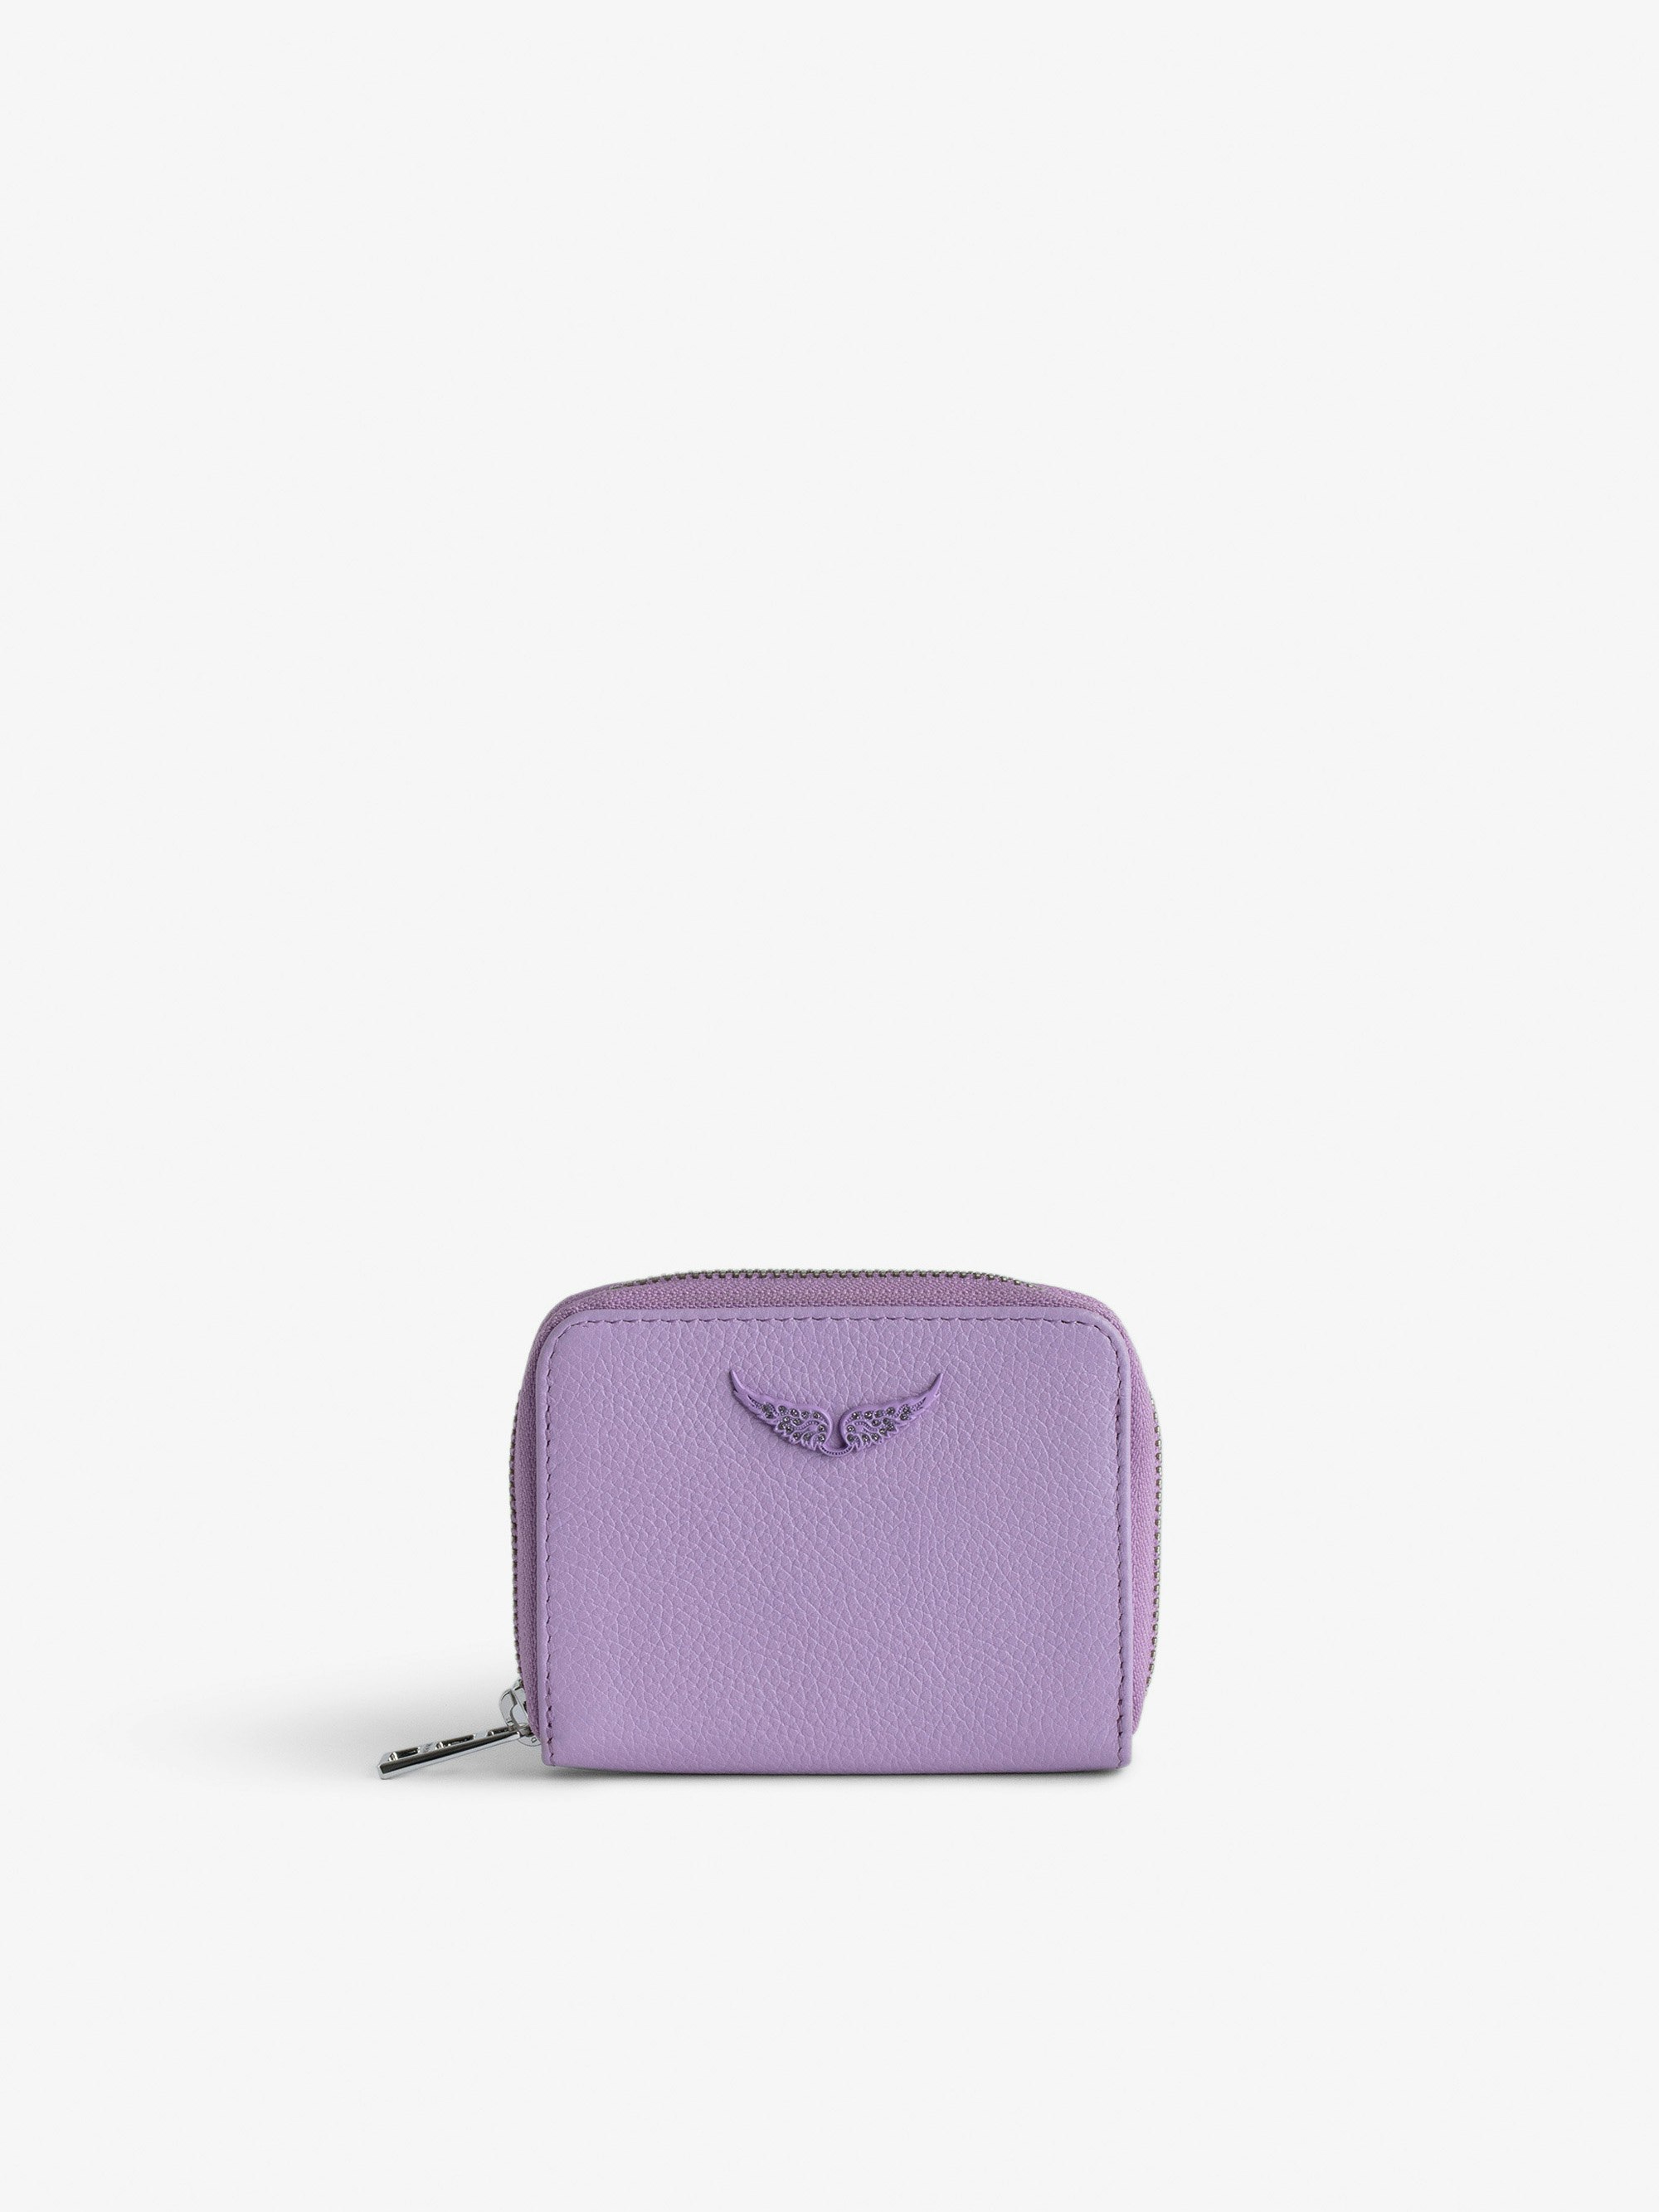 Geldbörse Mini ZV - Violette Geldbörse aus genarbtem Leder mit strassverziertem Fügel-Charm.